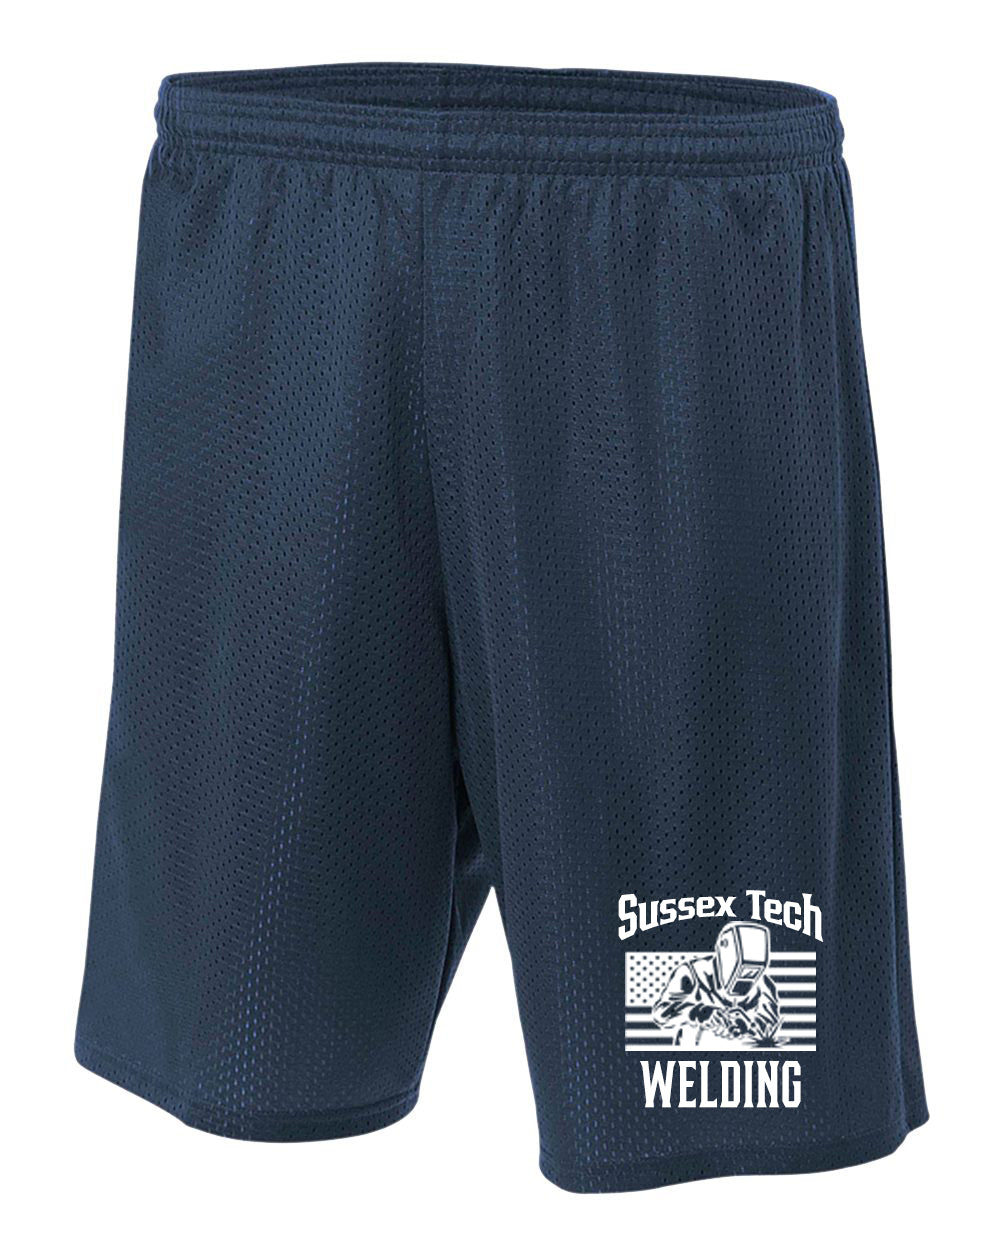 Sussex Tech Welding Design 1 Mesh Shorts